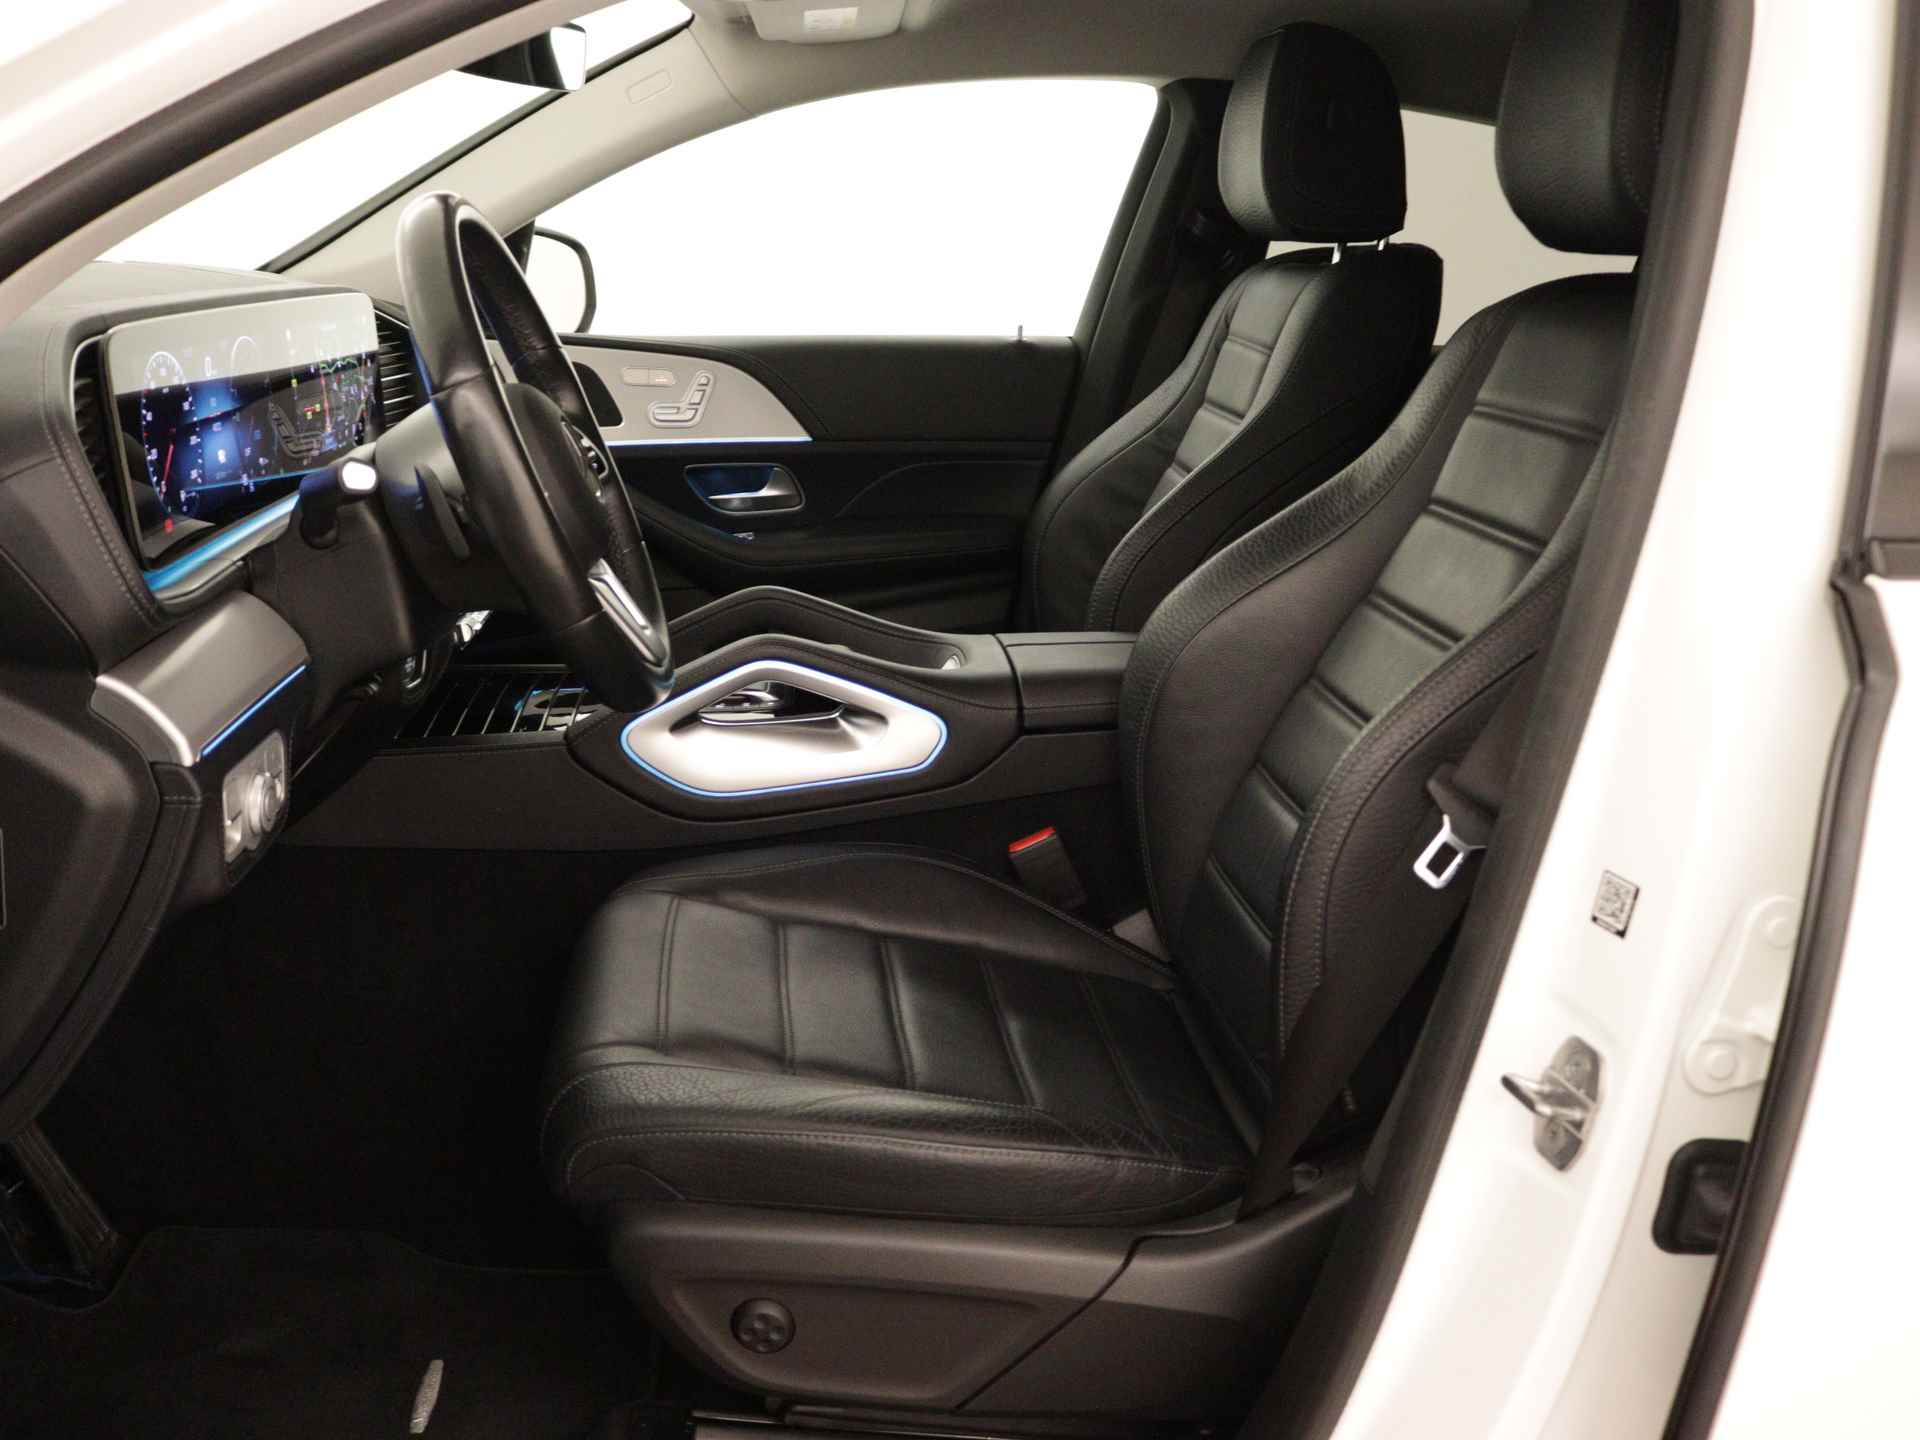 Mercedes-Benz GLE 350 e 4-MATIC AMG Nightpakket Limited 5 spaaks lichtmetalen velgen | Trekhaak | Airmatic | Treeplanken | Alarm klasse 3 |  Augmented Reality | sfeerverlichting | DAB | Parking support | inclusief 24 maanden MB Certified garantie voor europa - 20/45